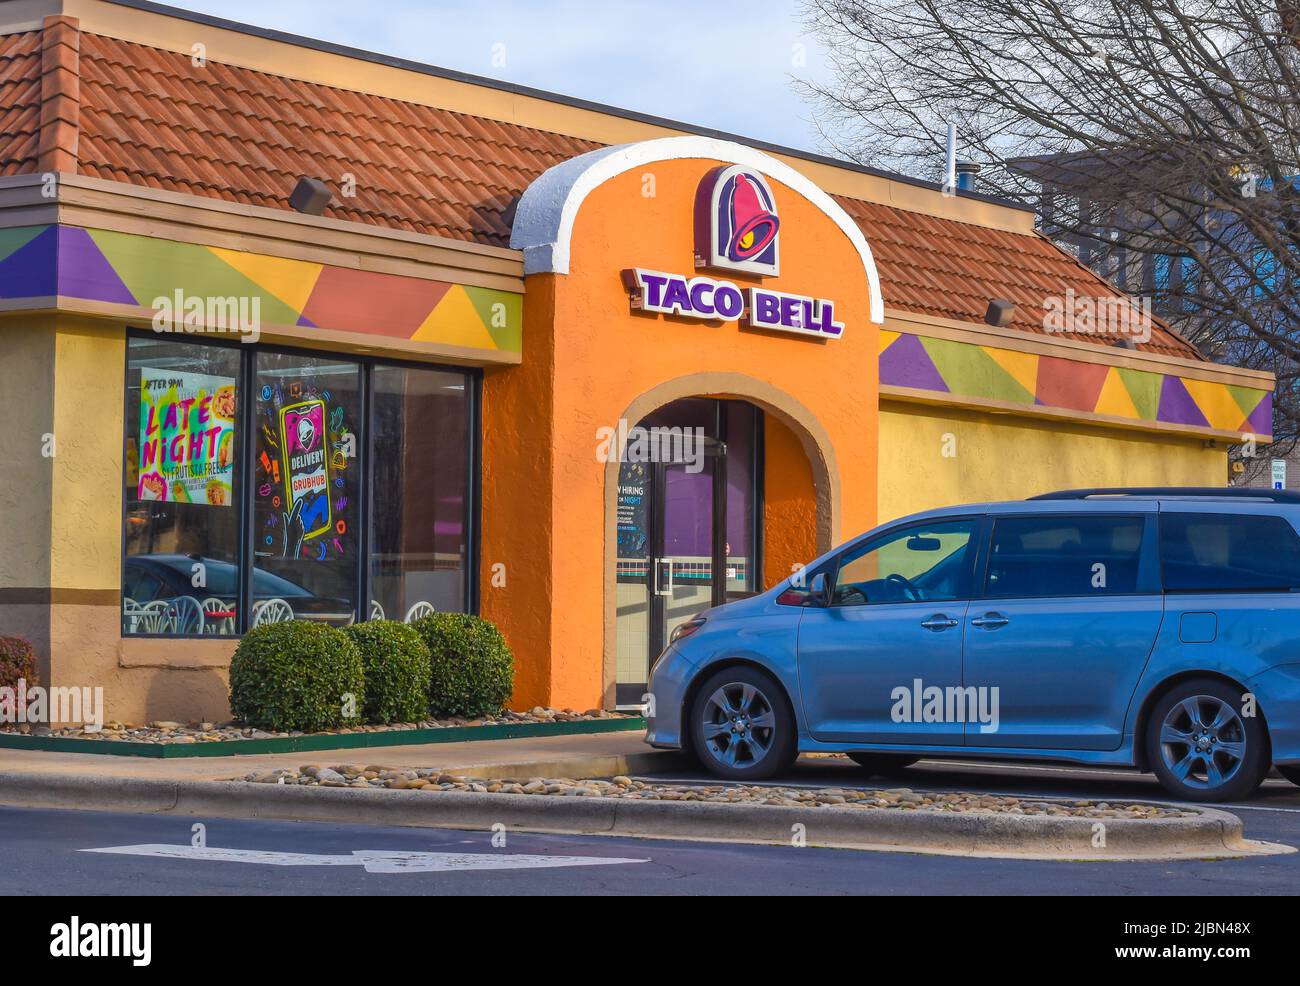 Taco Bell's Außenfassade Marke und Logo Signage in lila Buchstaben auf adobe tan Eingangsfassade mit Himmel und nackten Ästen von Bäumen in Charlotte. Stockfoto